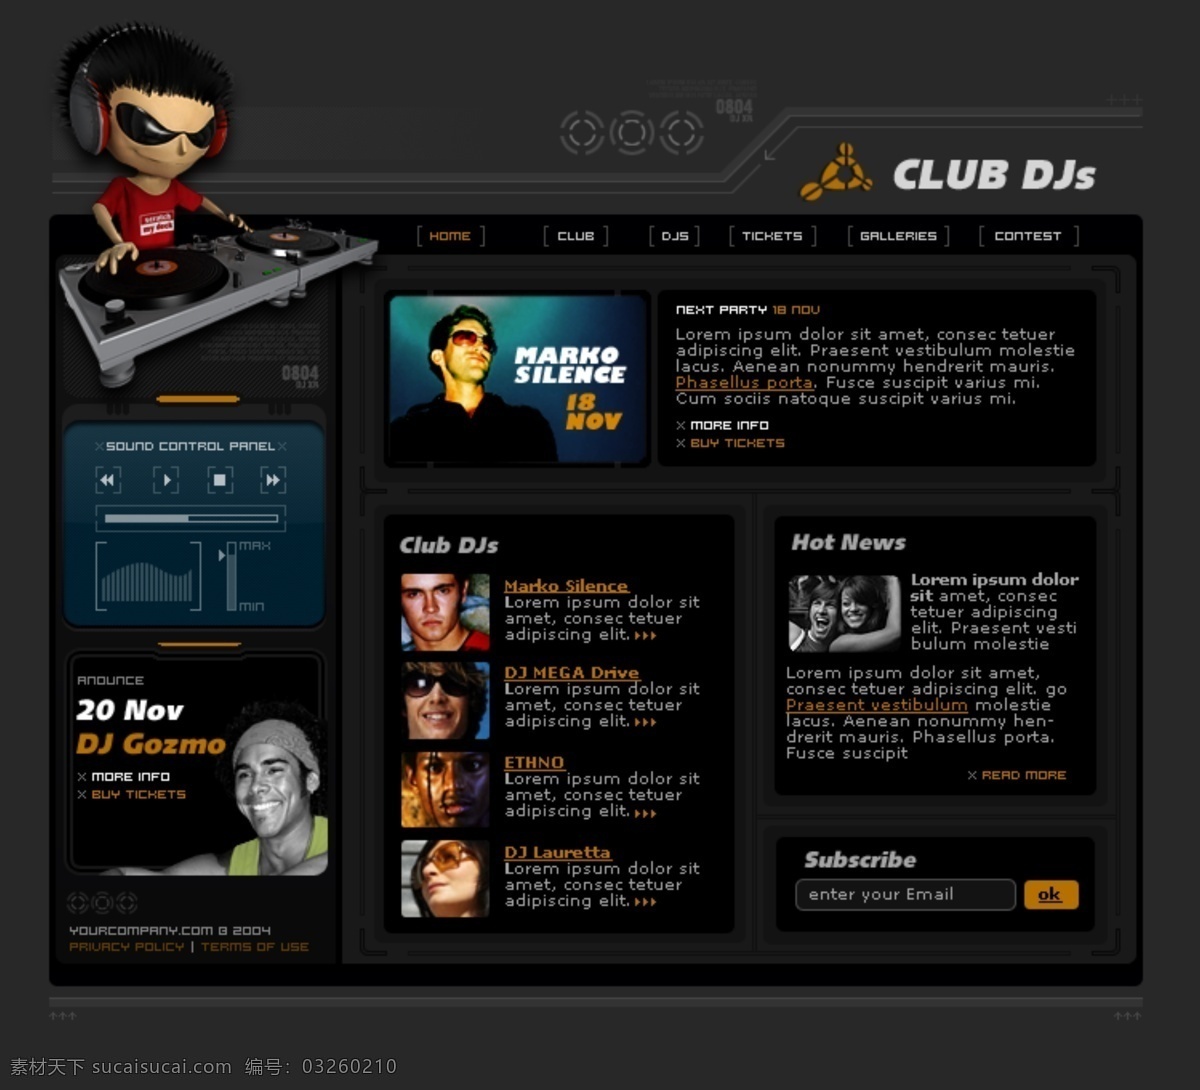 黑色 音乐 dj 俱乐部 网页模板 欧美风格 dj俱乐部 网页素材